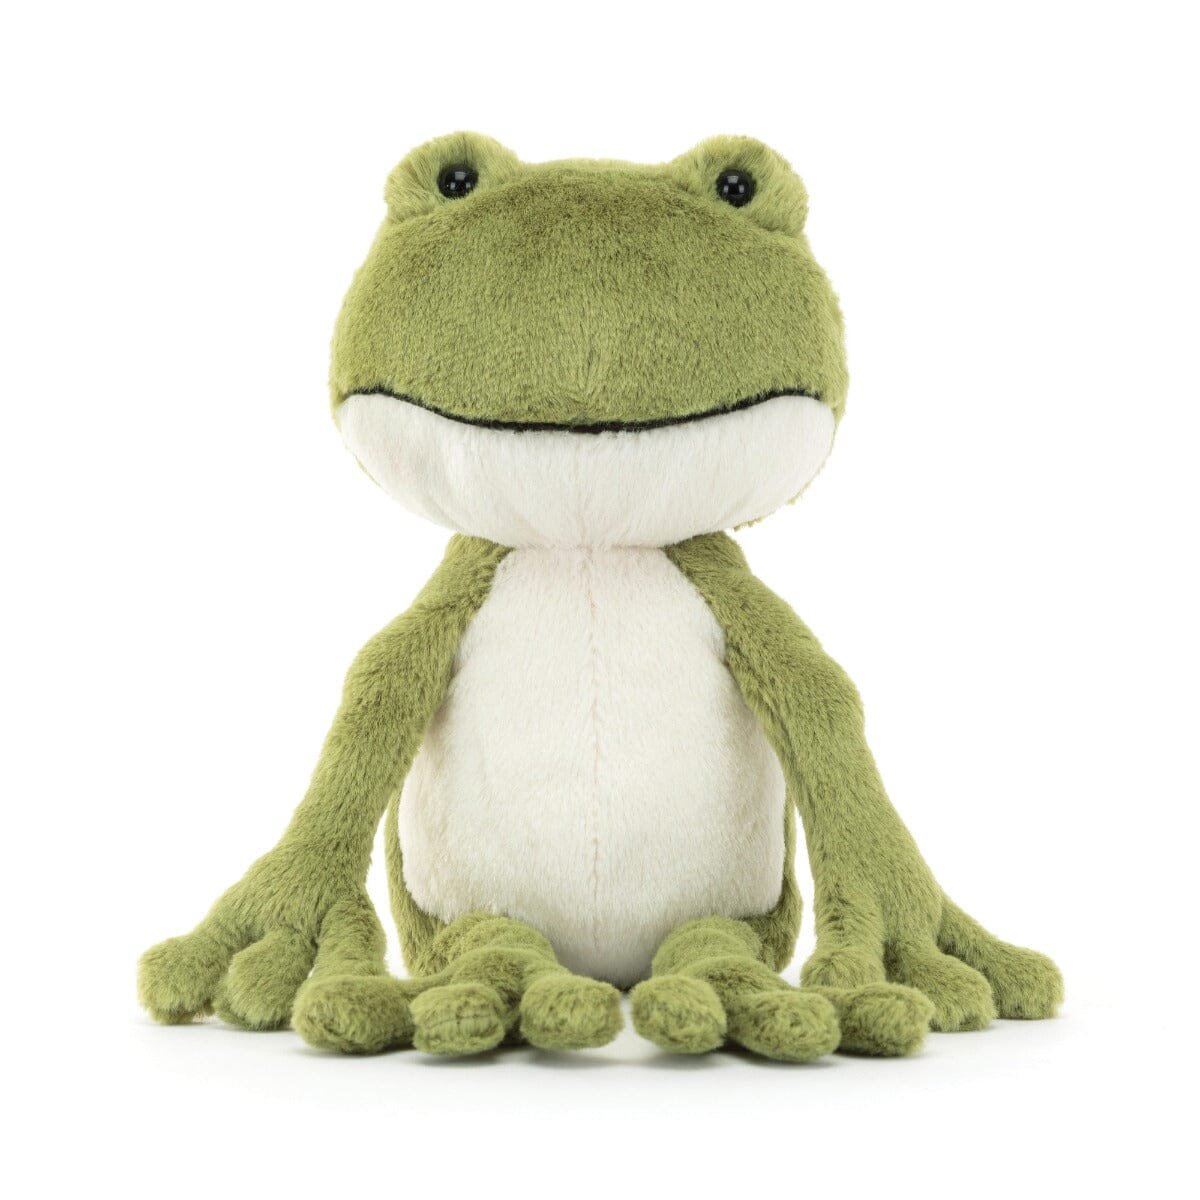 Jellycat - Finnegan Frog Soft Toy Jellycat 